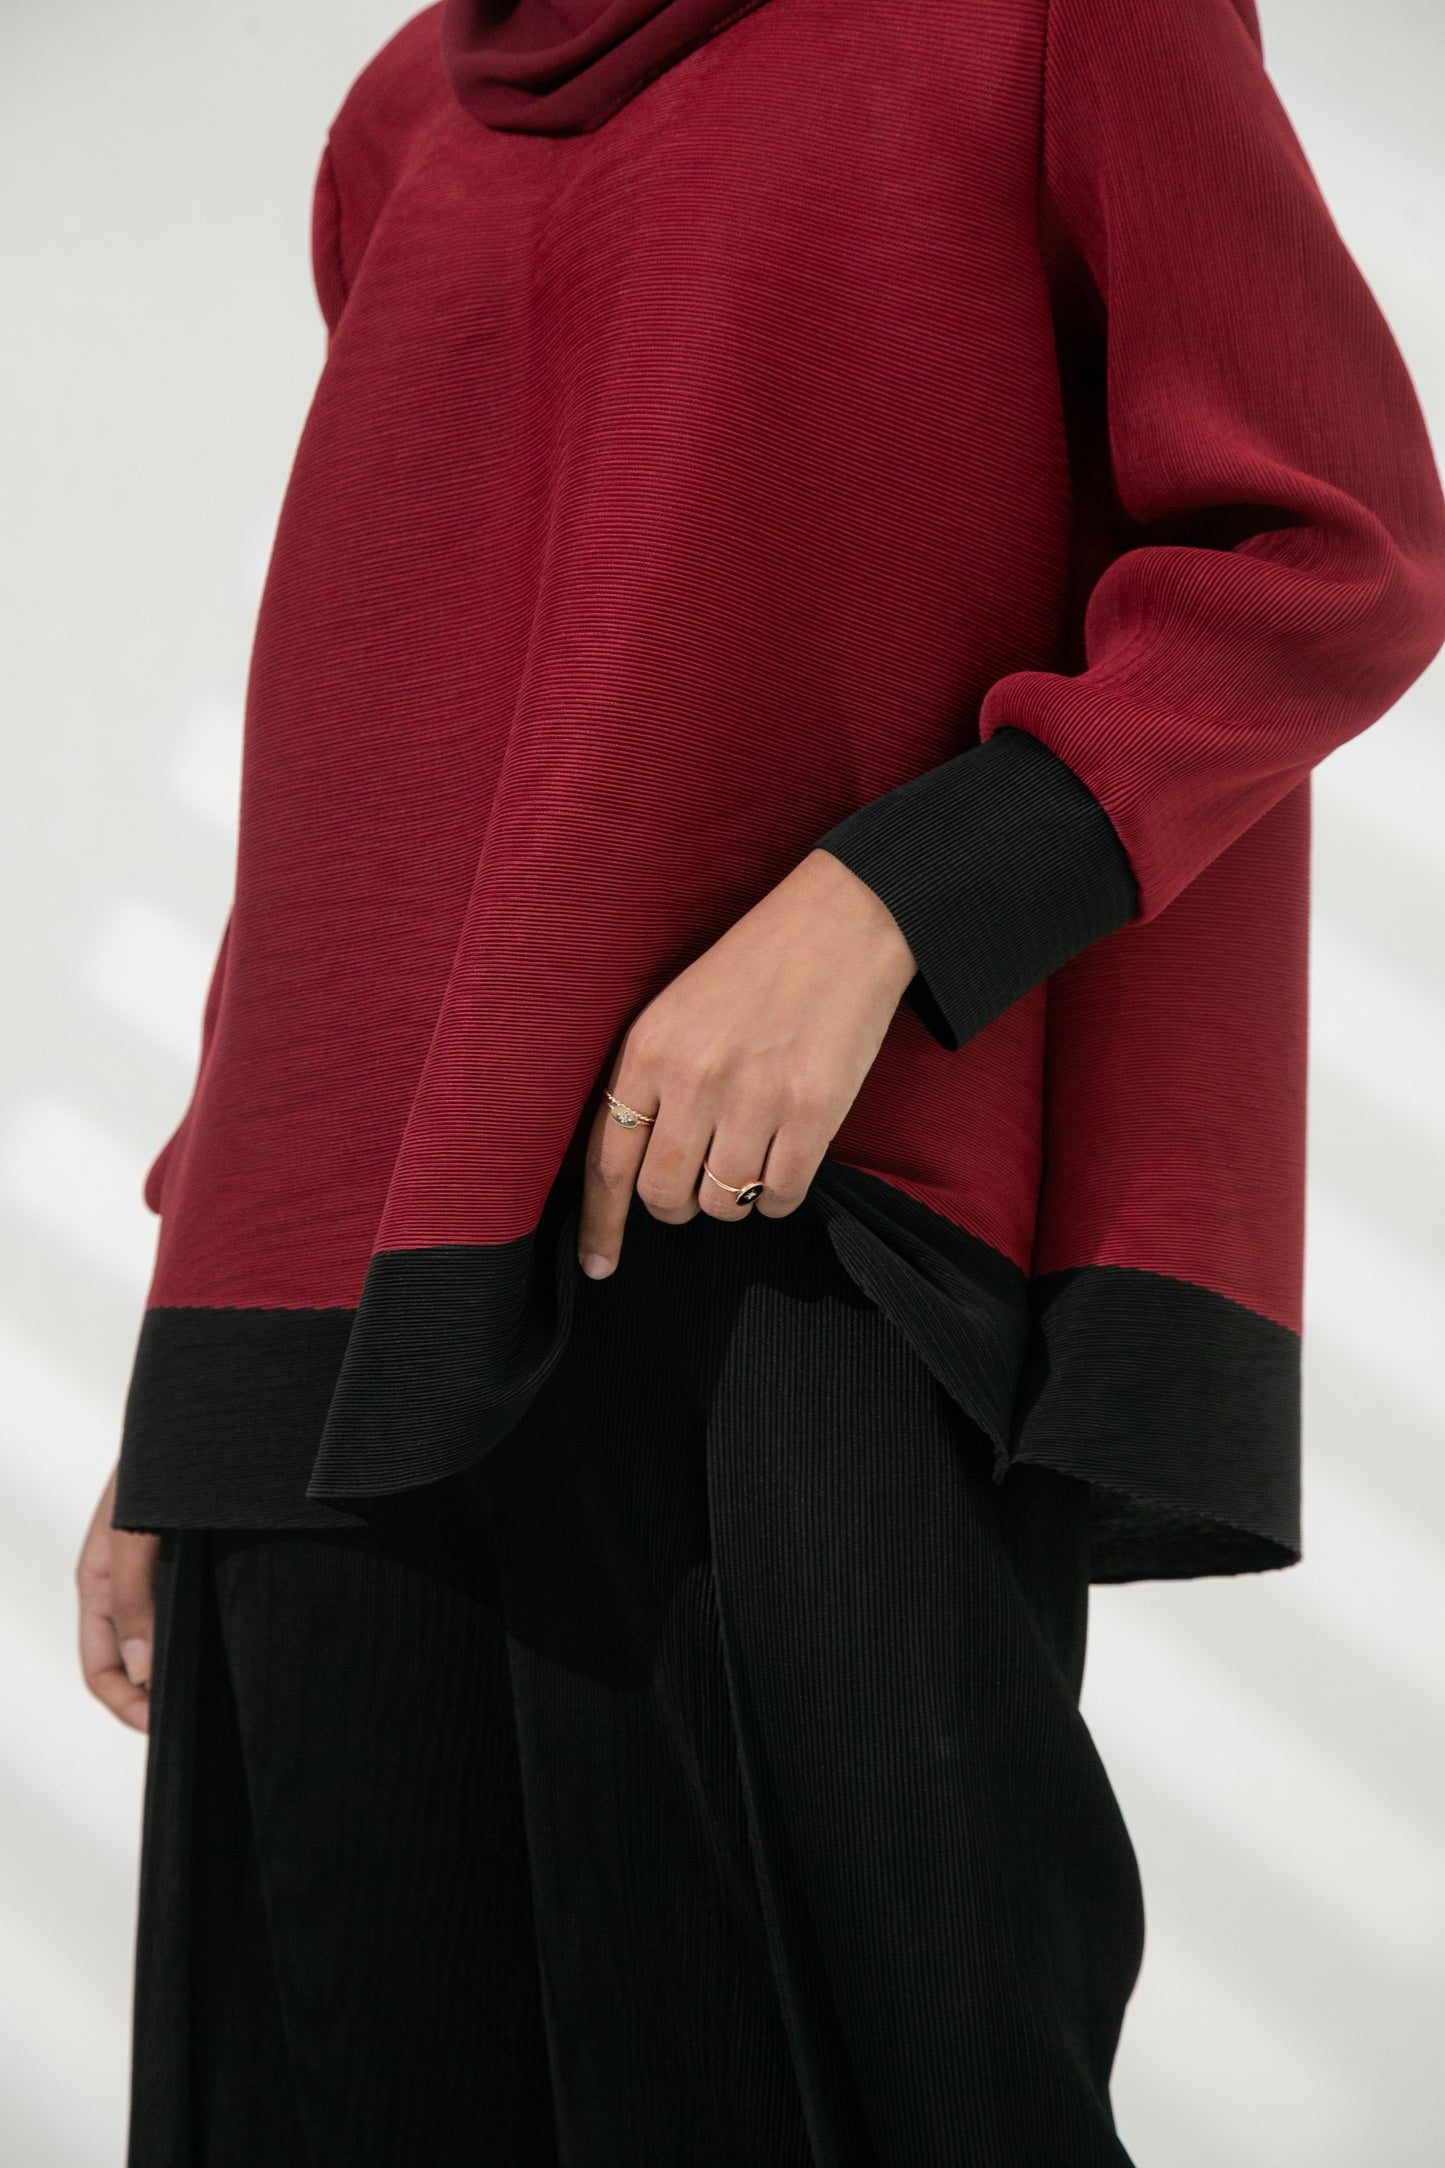 Mardee Long Sleeve Top in Red / Black